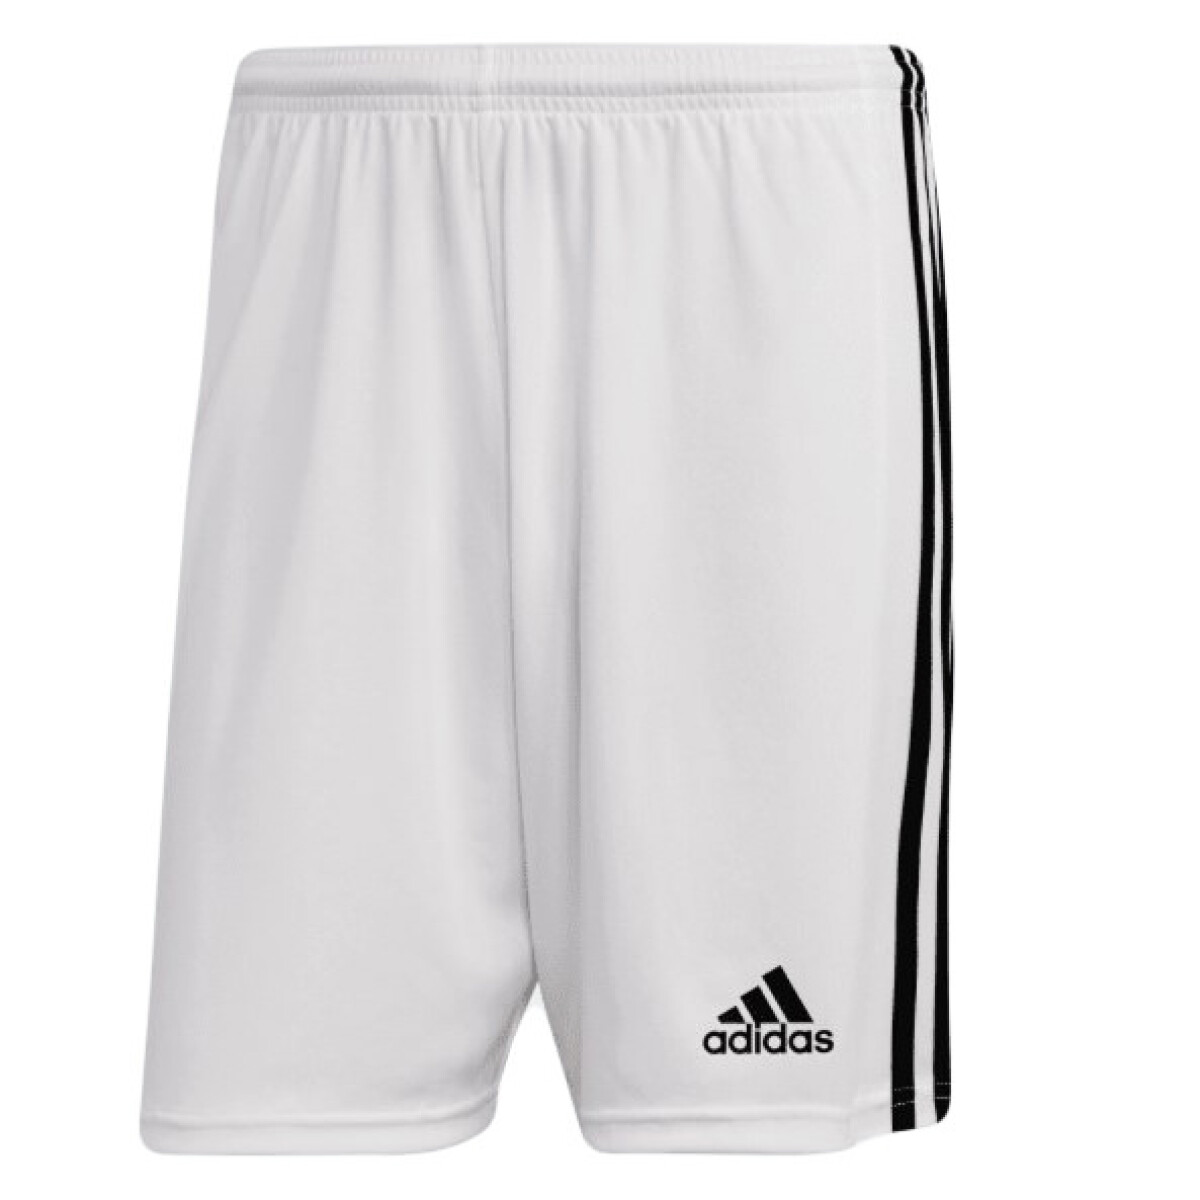 Short Squad 21 Adidas - Blanco/Negro 